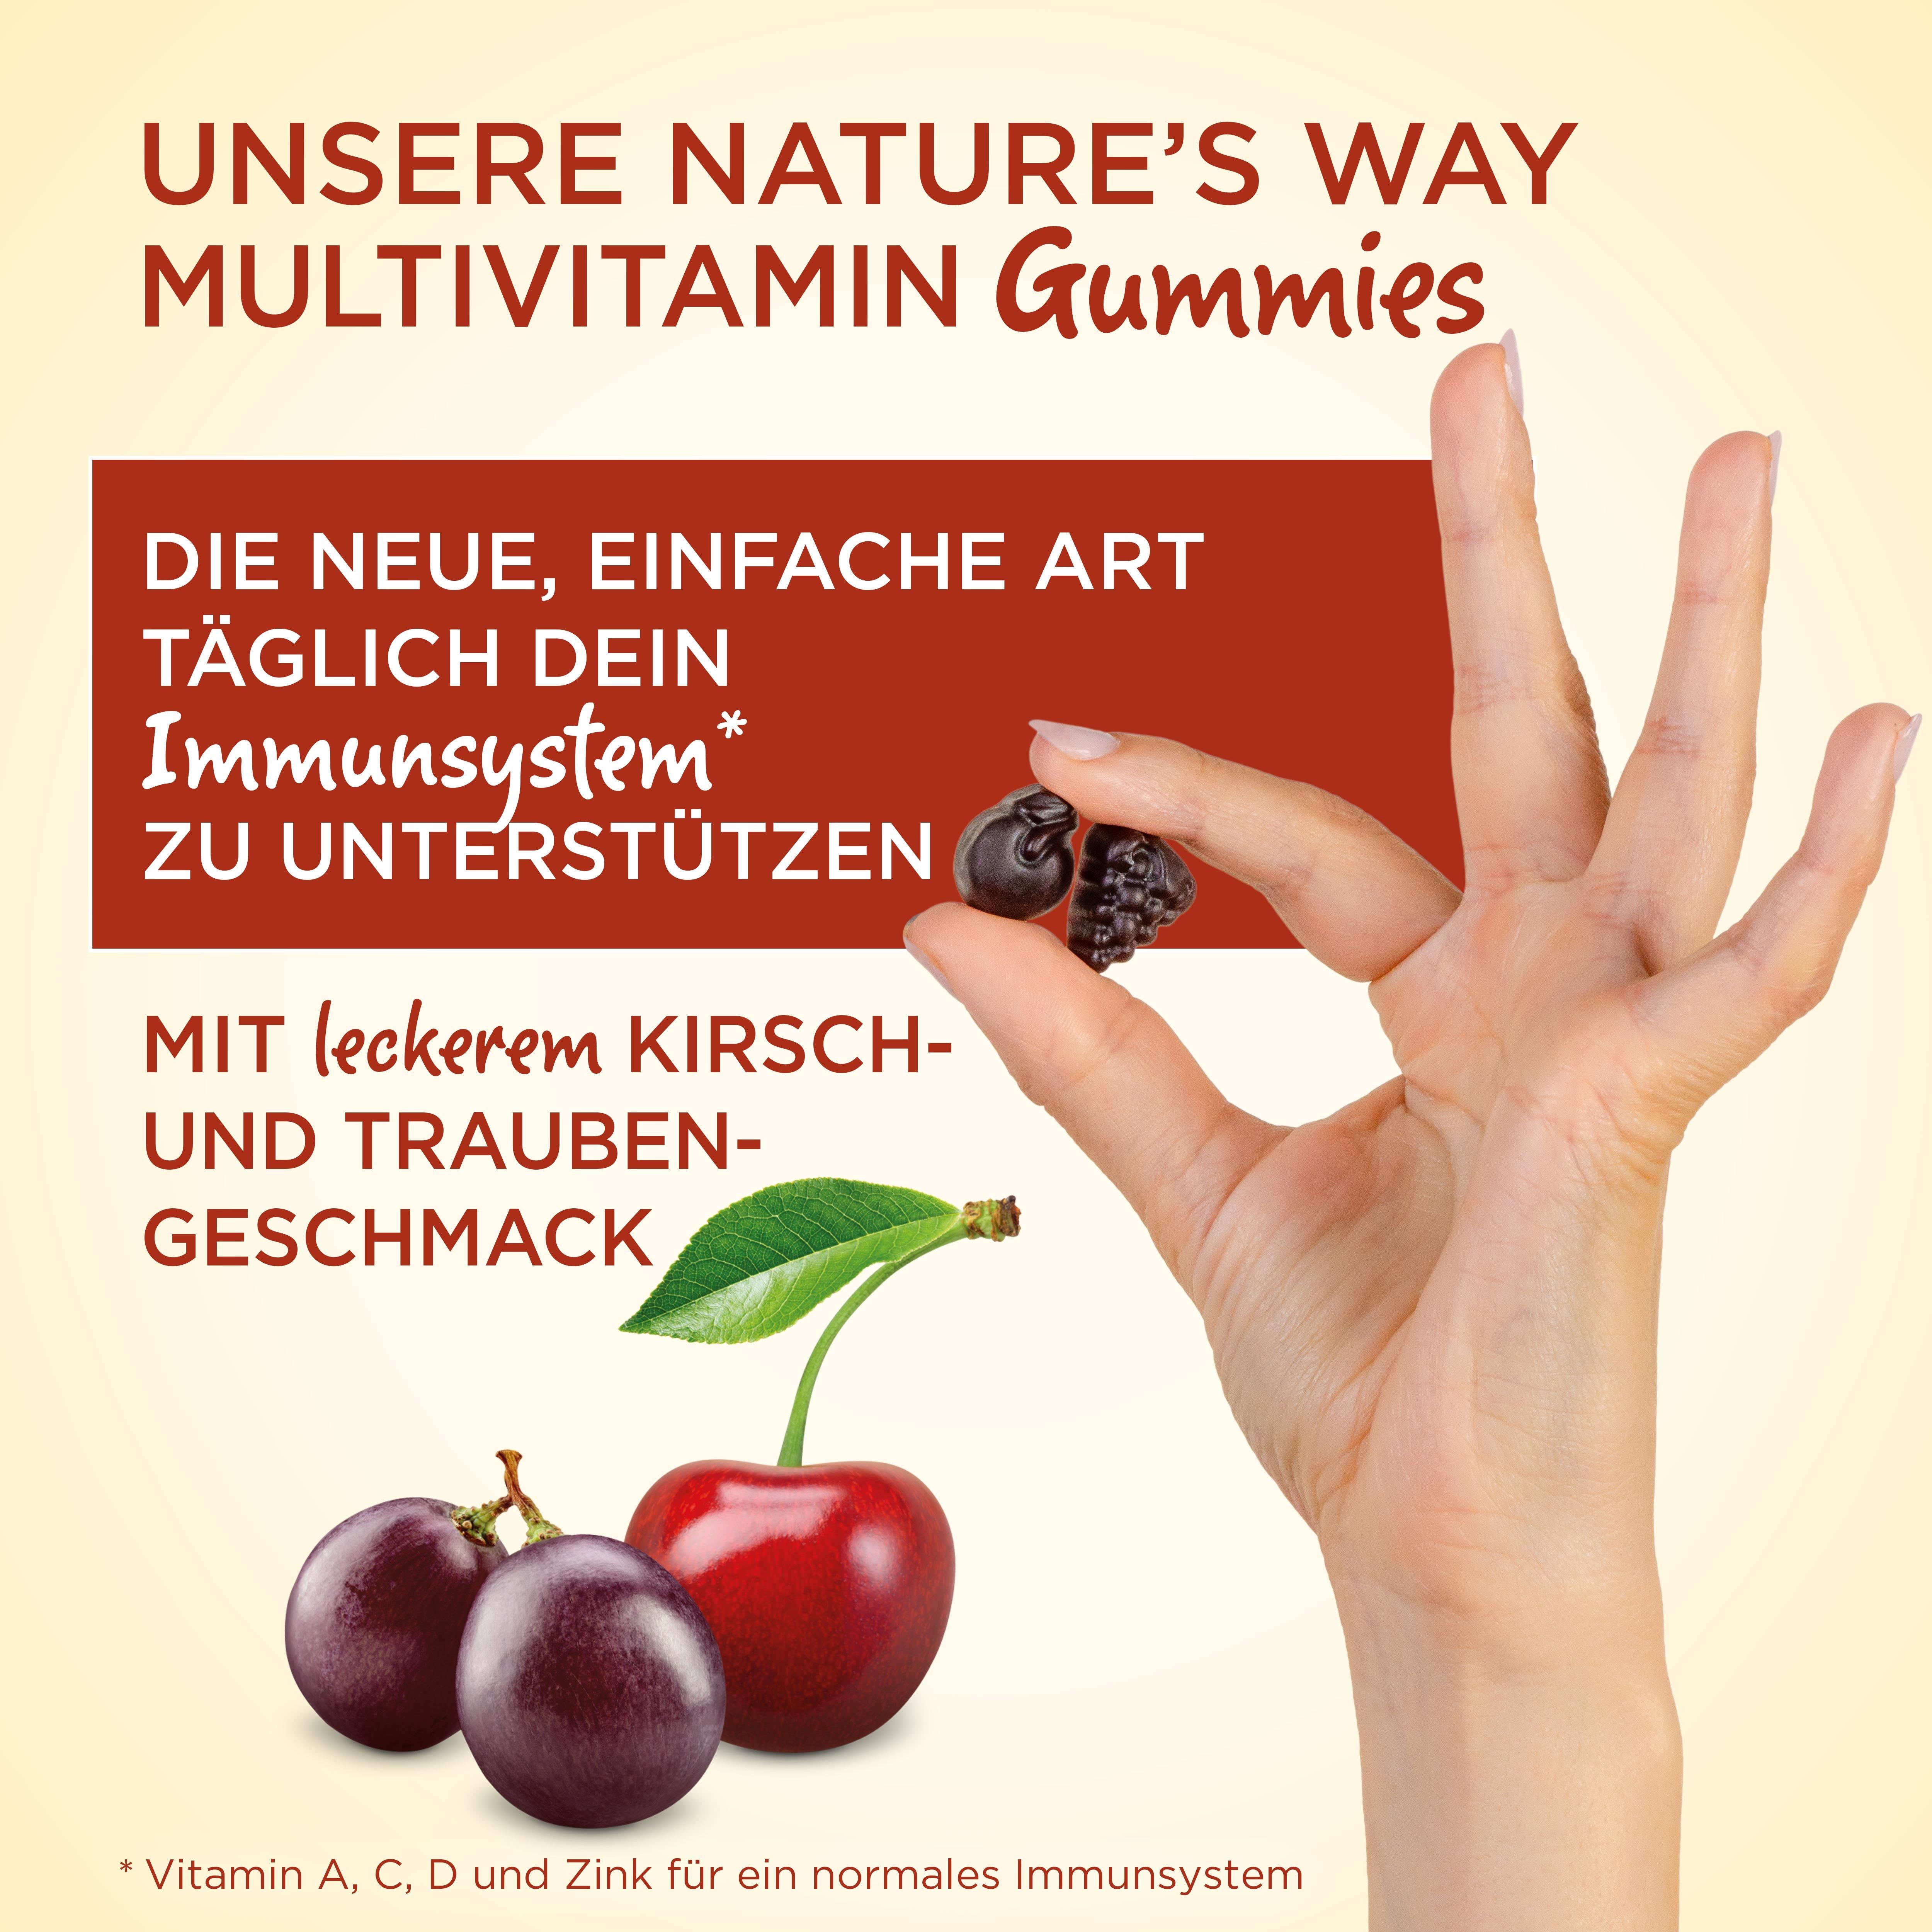 Nature's Way Immun Multivitamin Gummies 90Stk - 6er Bundle